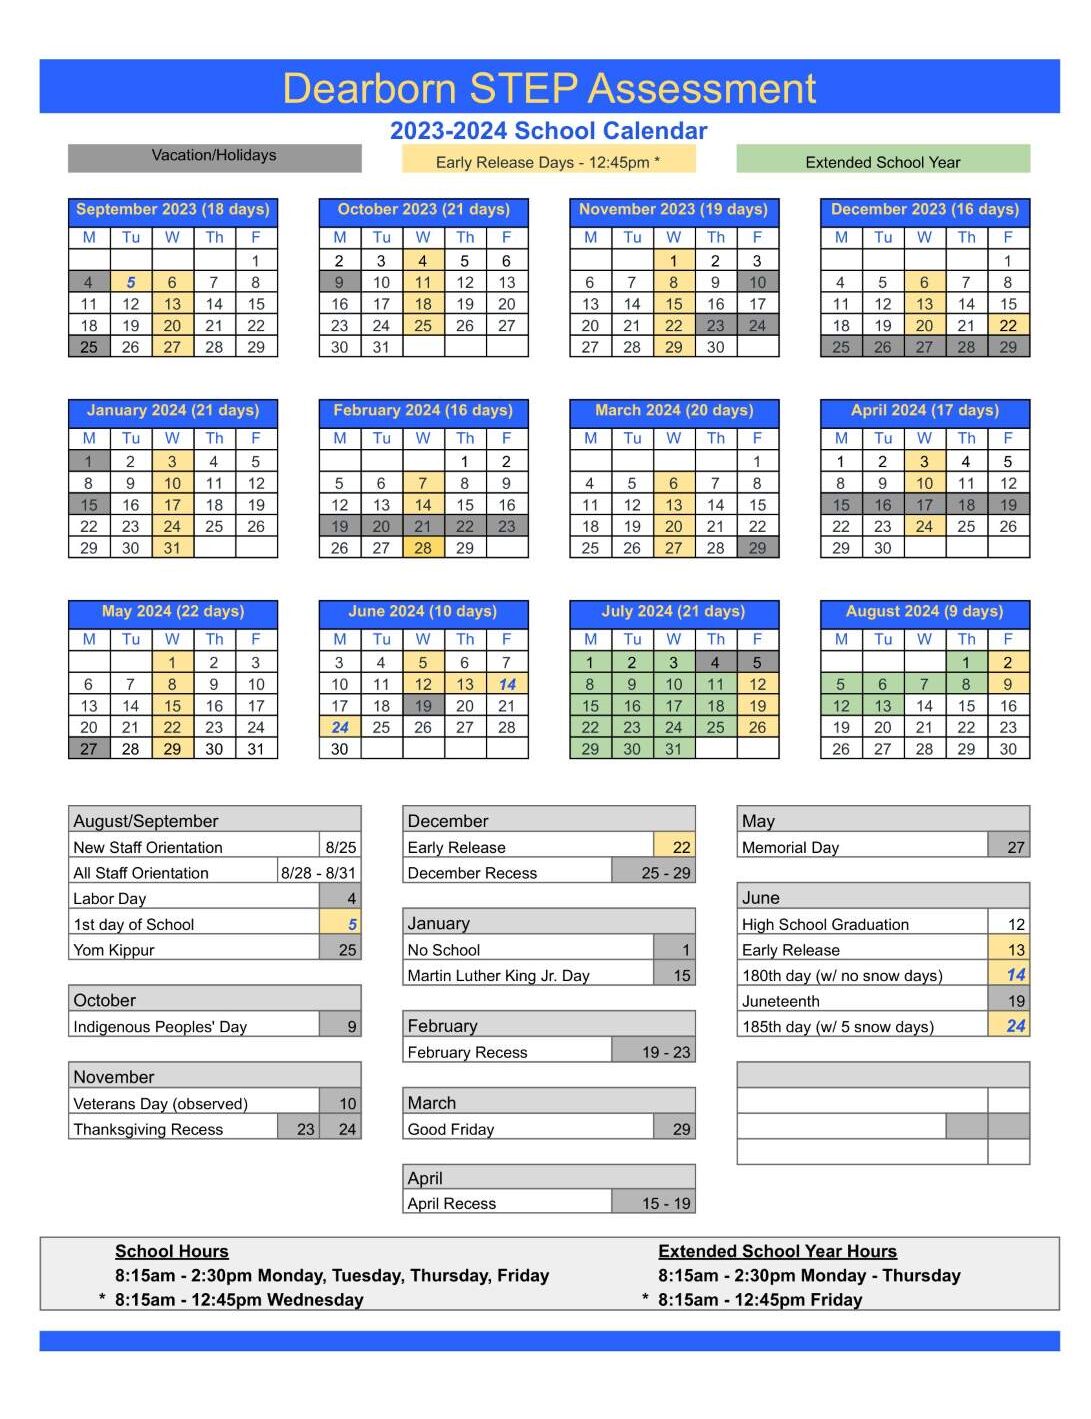 Dearborn STEP 2023-2024 school year calendar